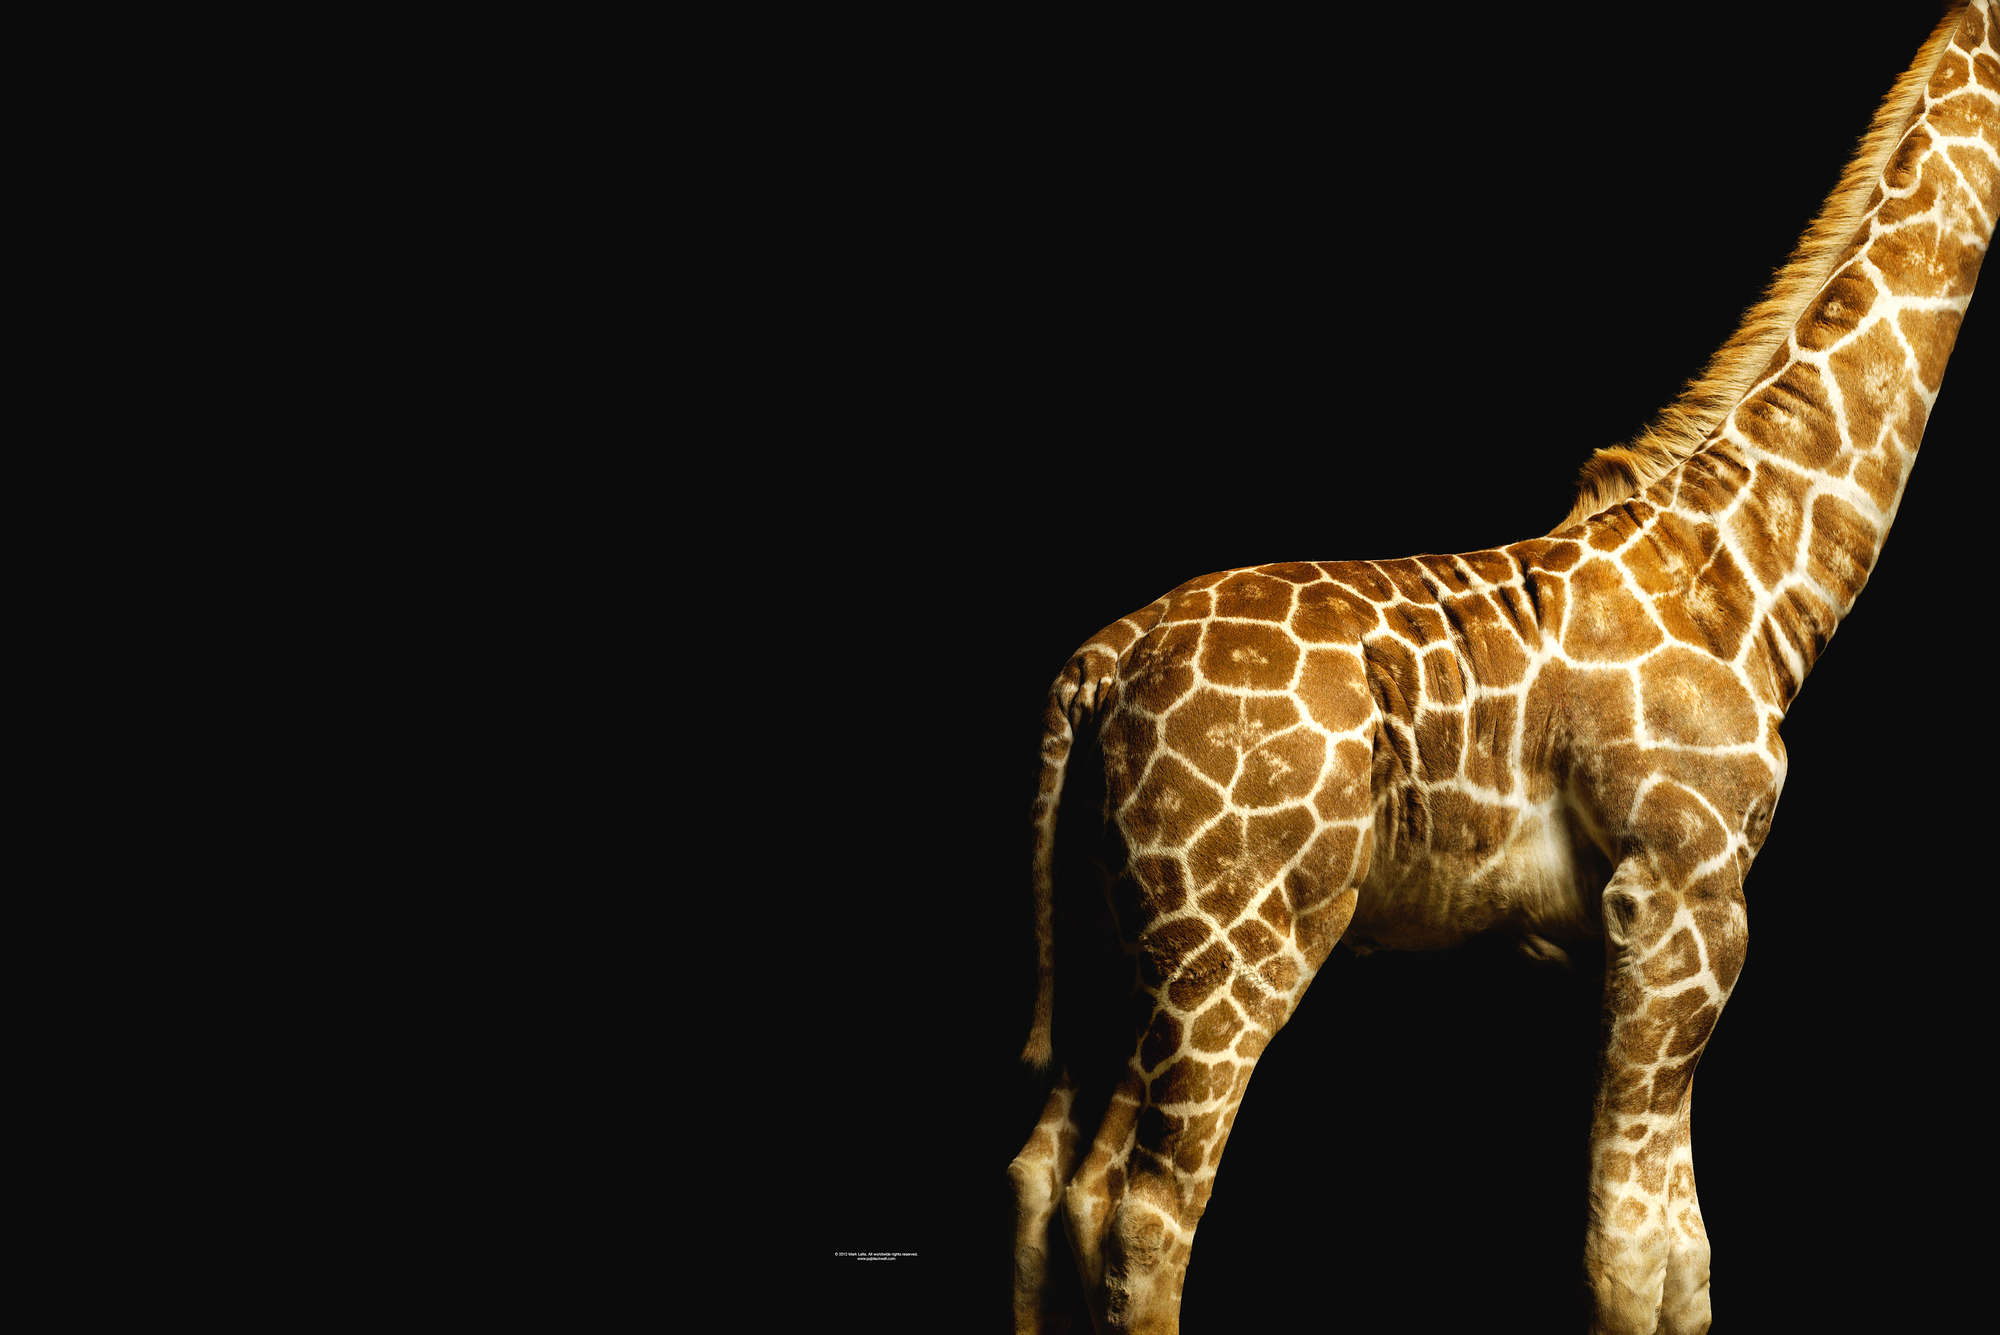             Cuerpo de jirafa - Papel pintado de retratos de animales
        